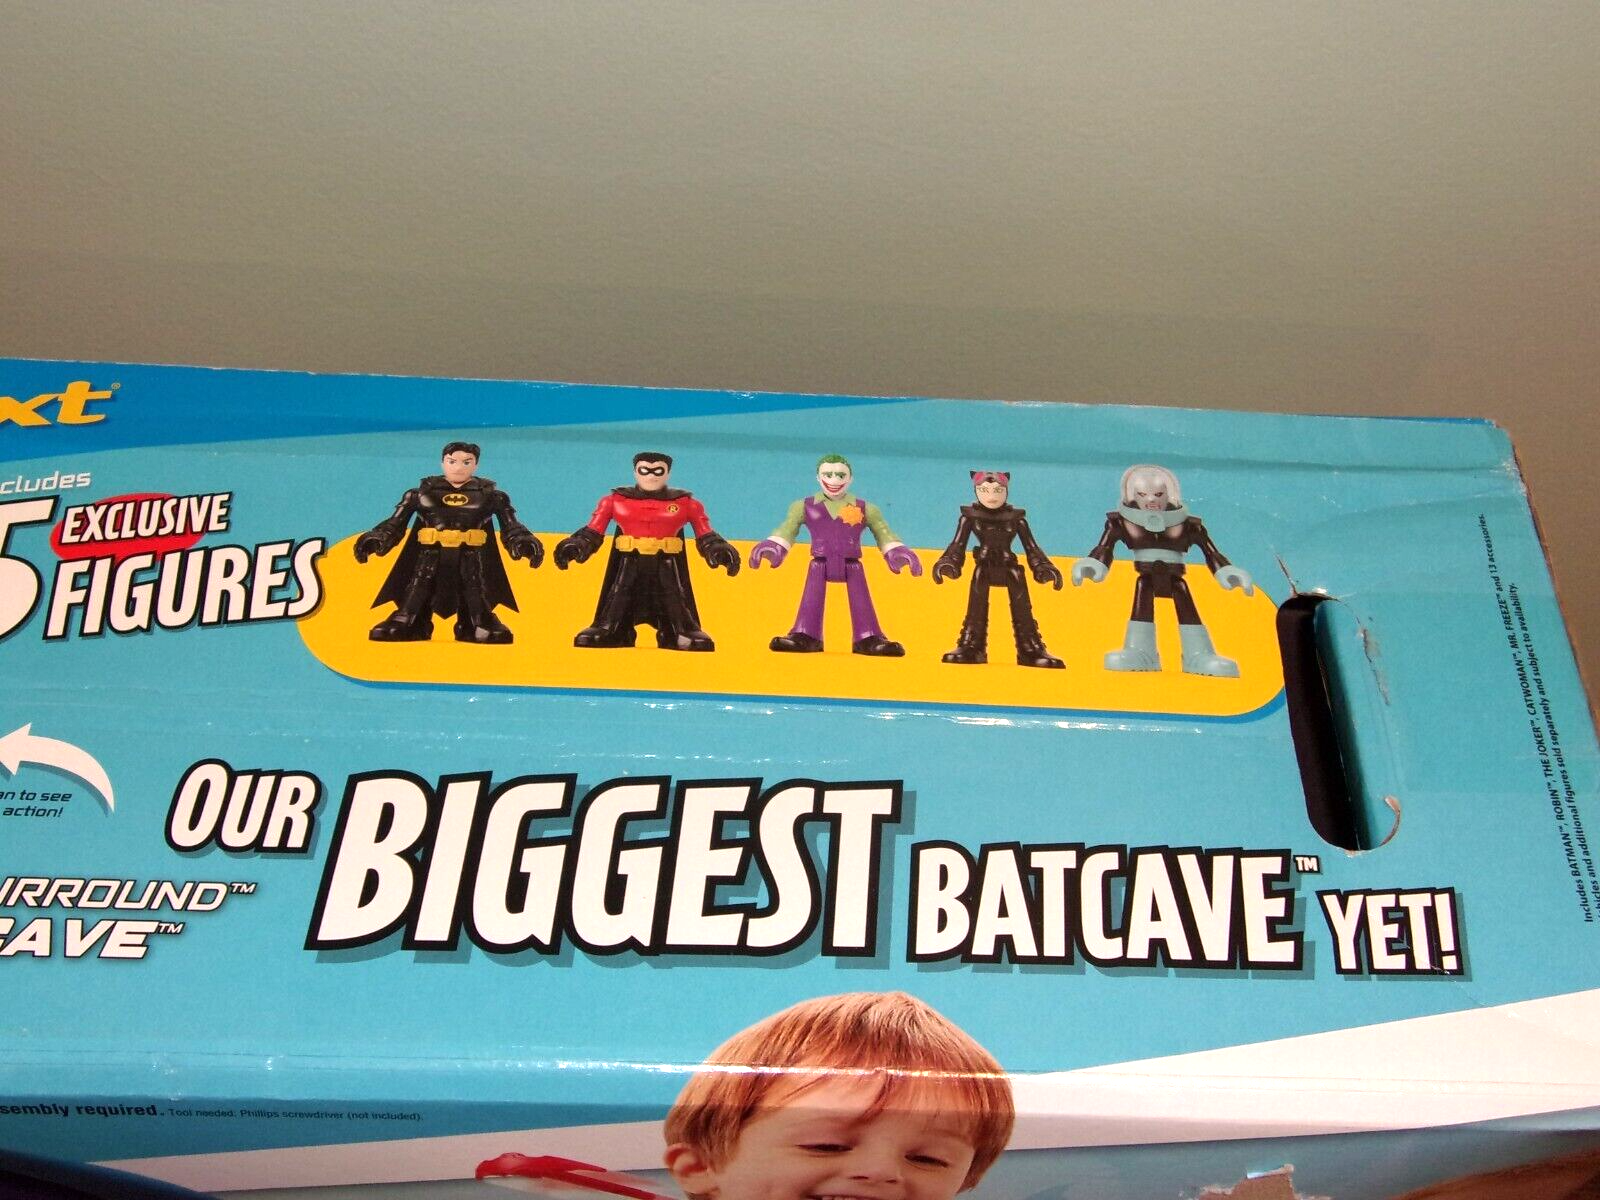 ::DC Super Friends Imaginext SUPER SURROUND BATCAVE Batman Figure Playset Sealed